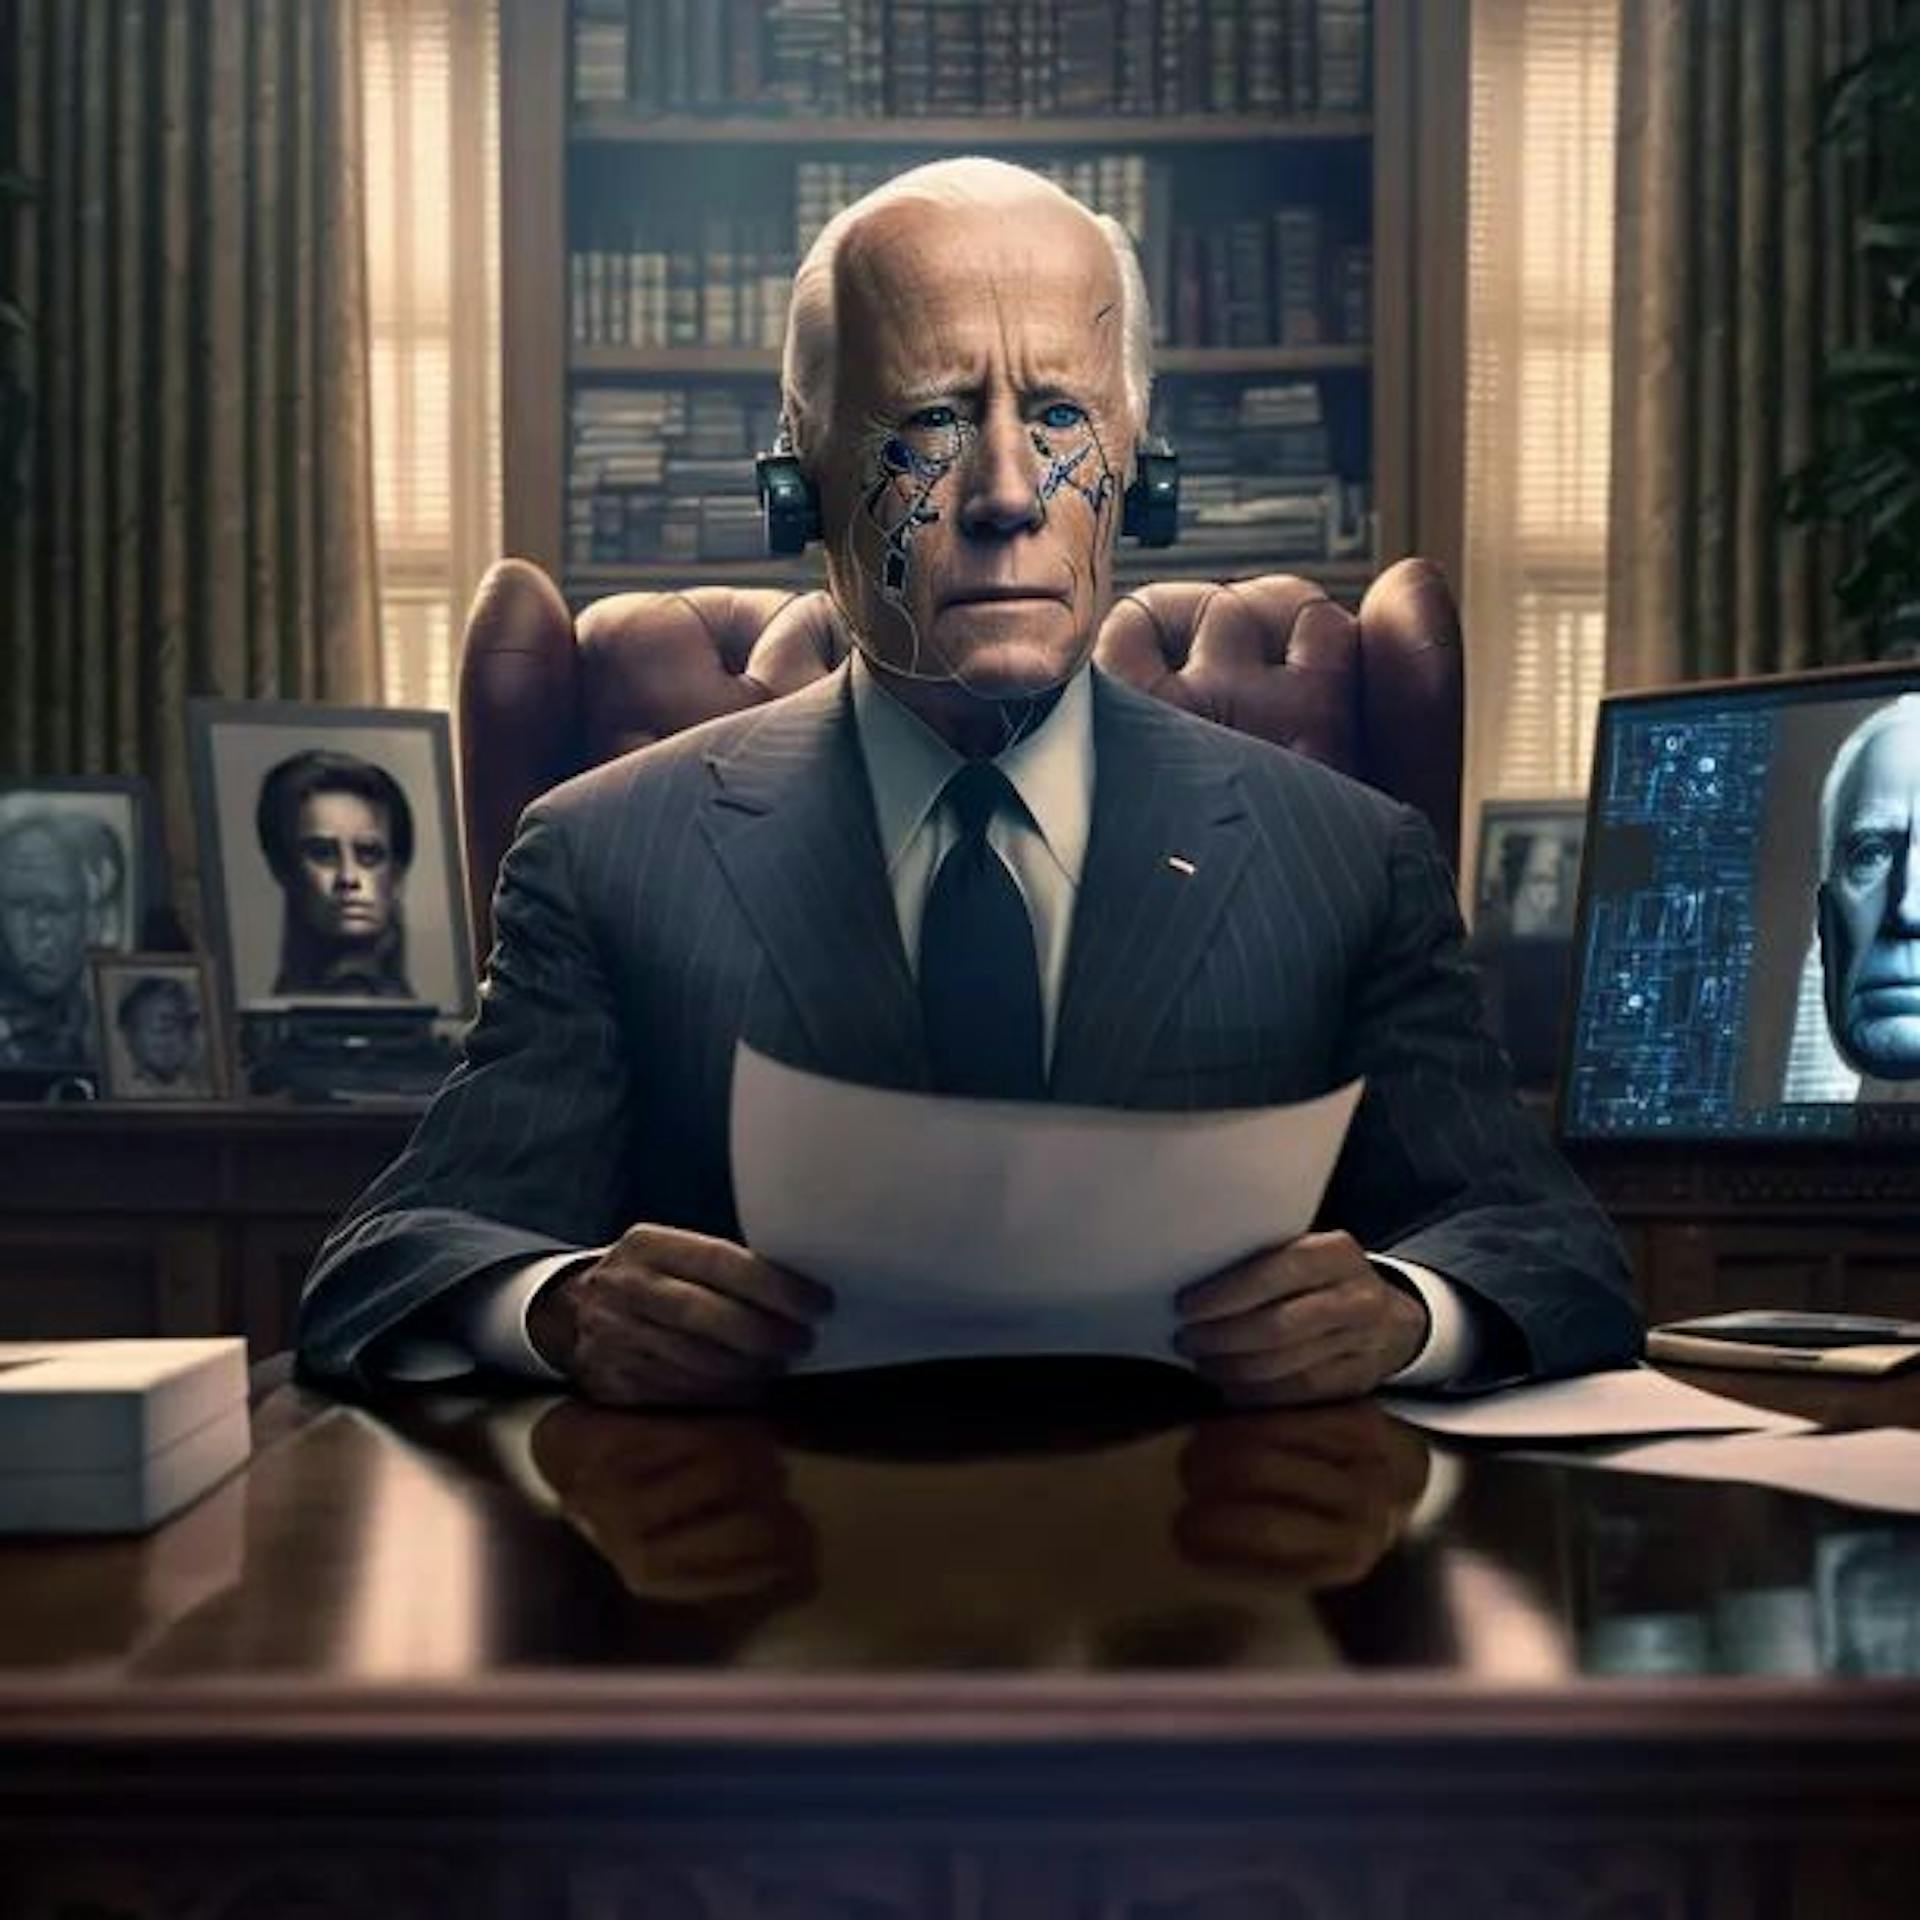 Indicación a mitad de camino: imagen fotorrealista de Joe Biden en la oficina oval buscando asesoramiento político de un programa de inteligencia artificial que todo lo sabe.